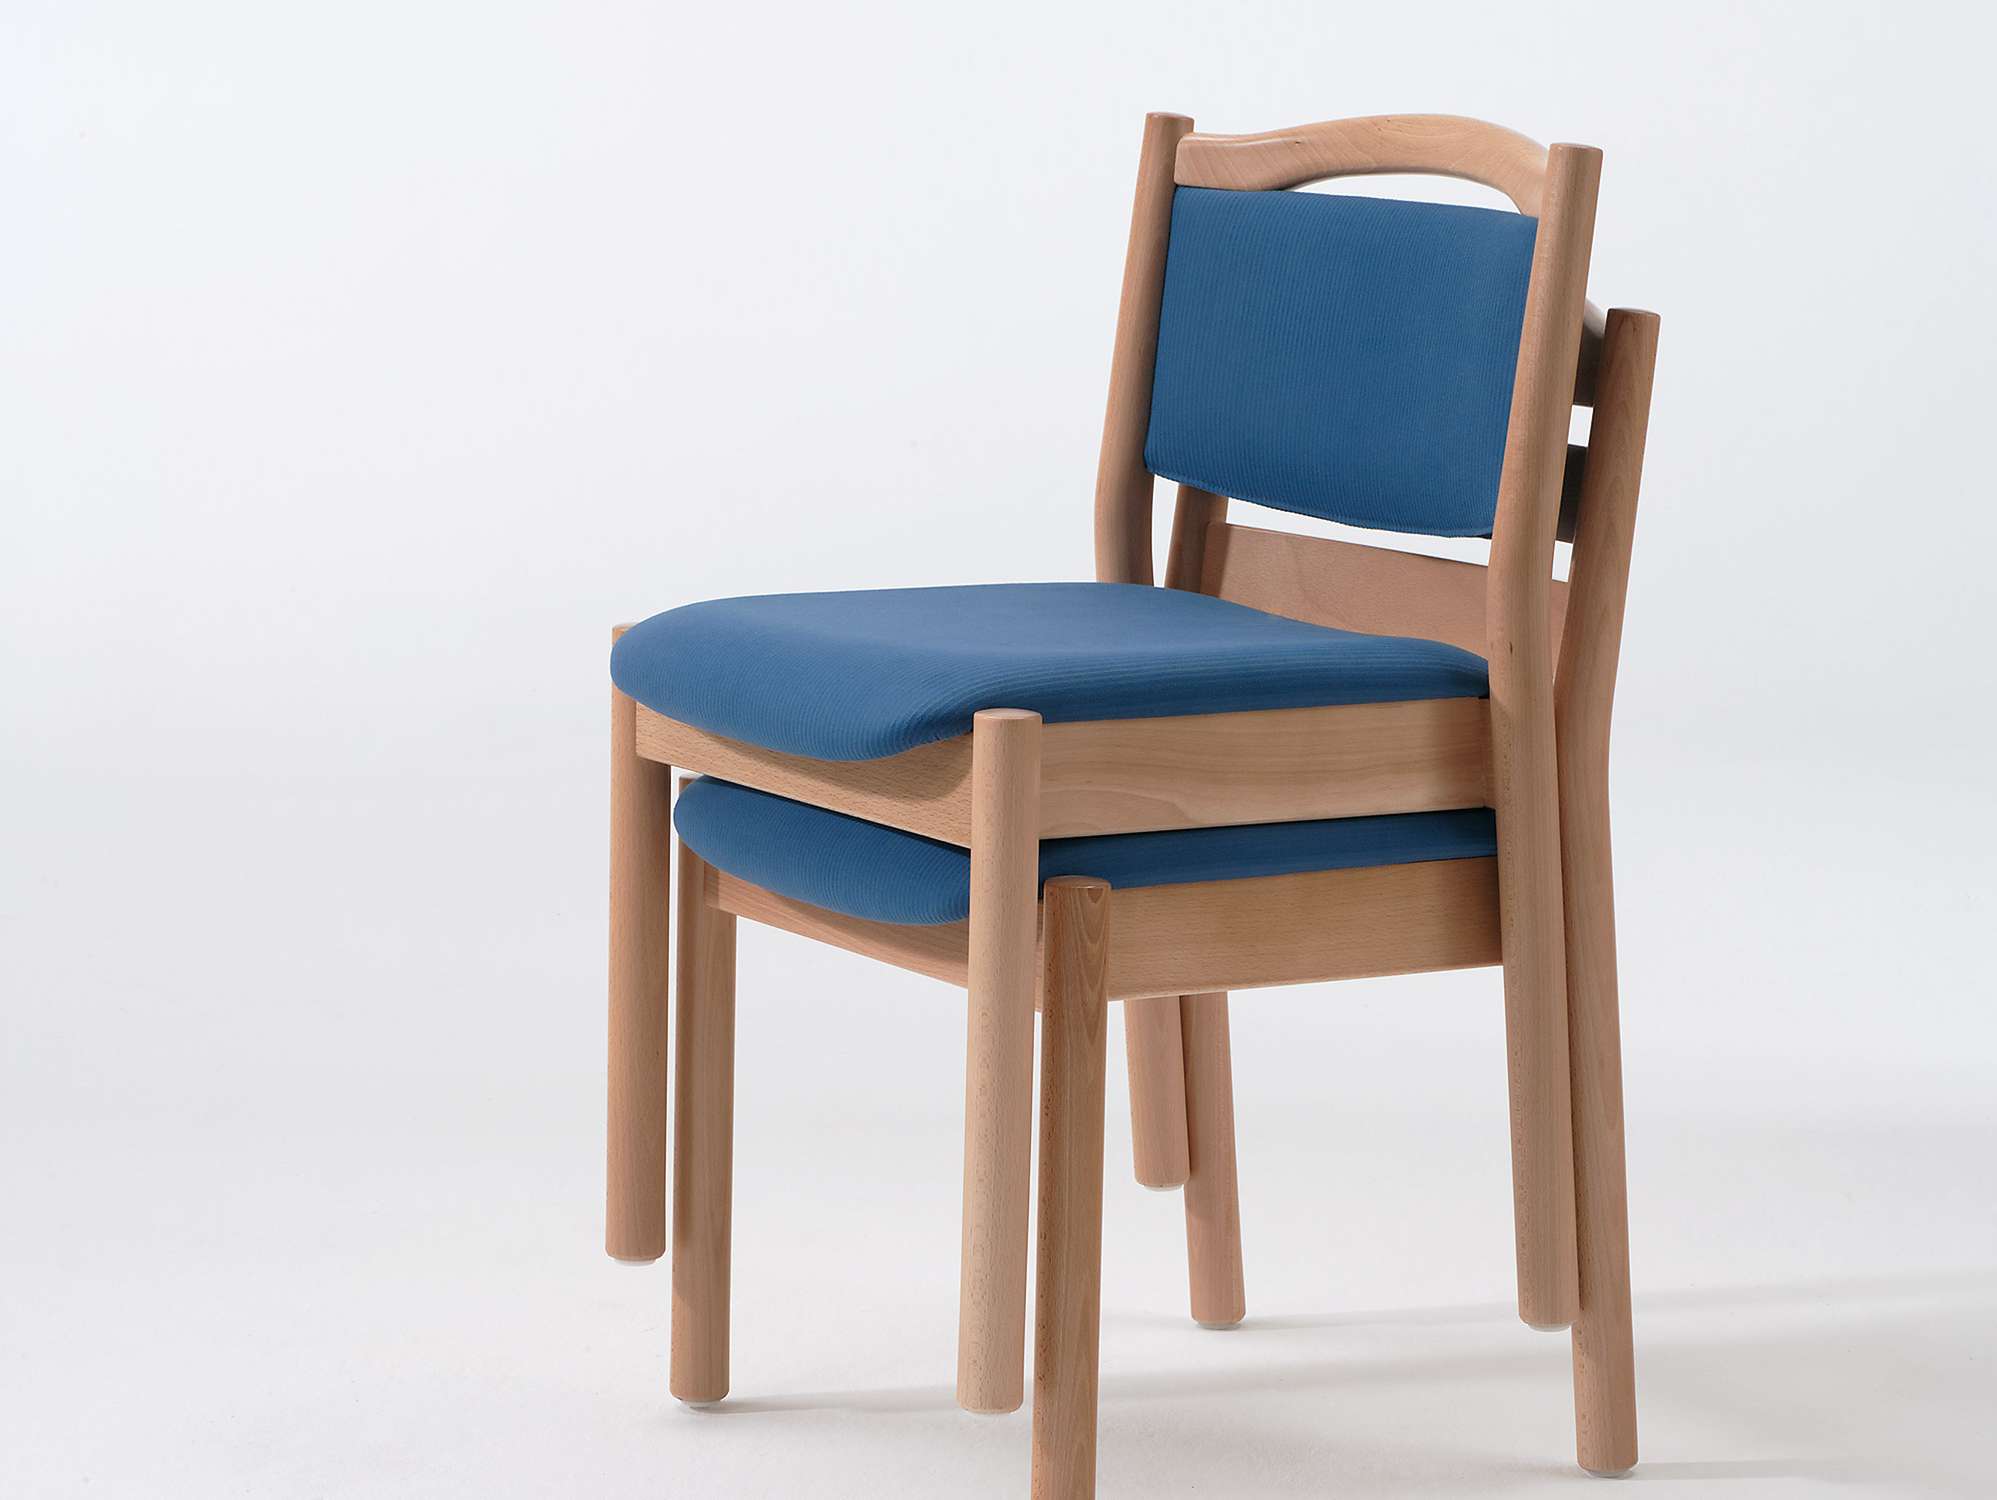 Primo-kalustesarjan päällekkäin pinottavat tuolit